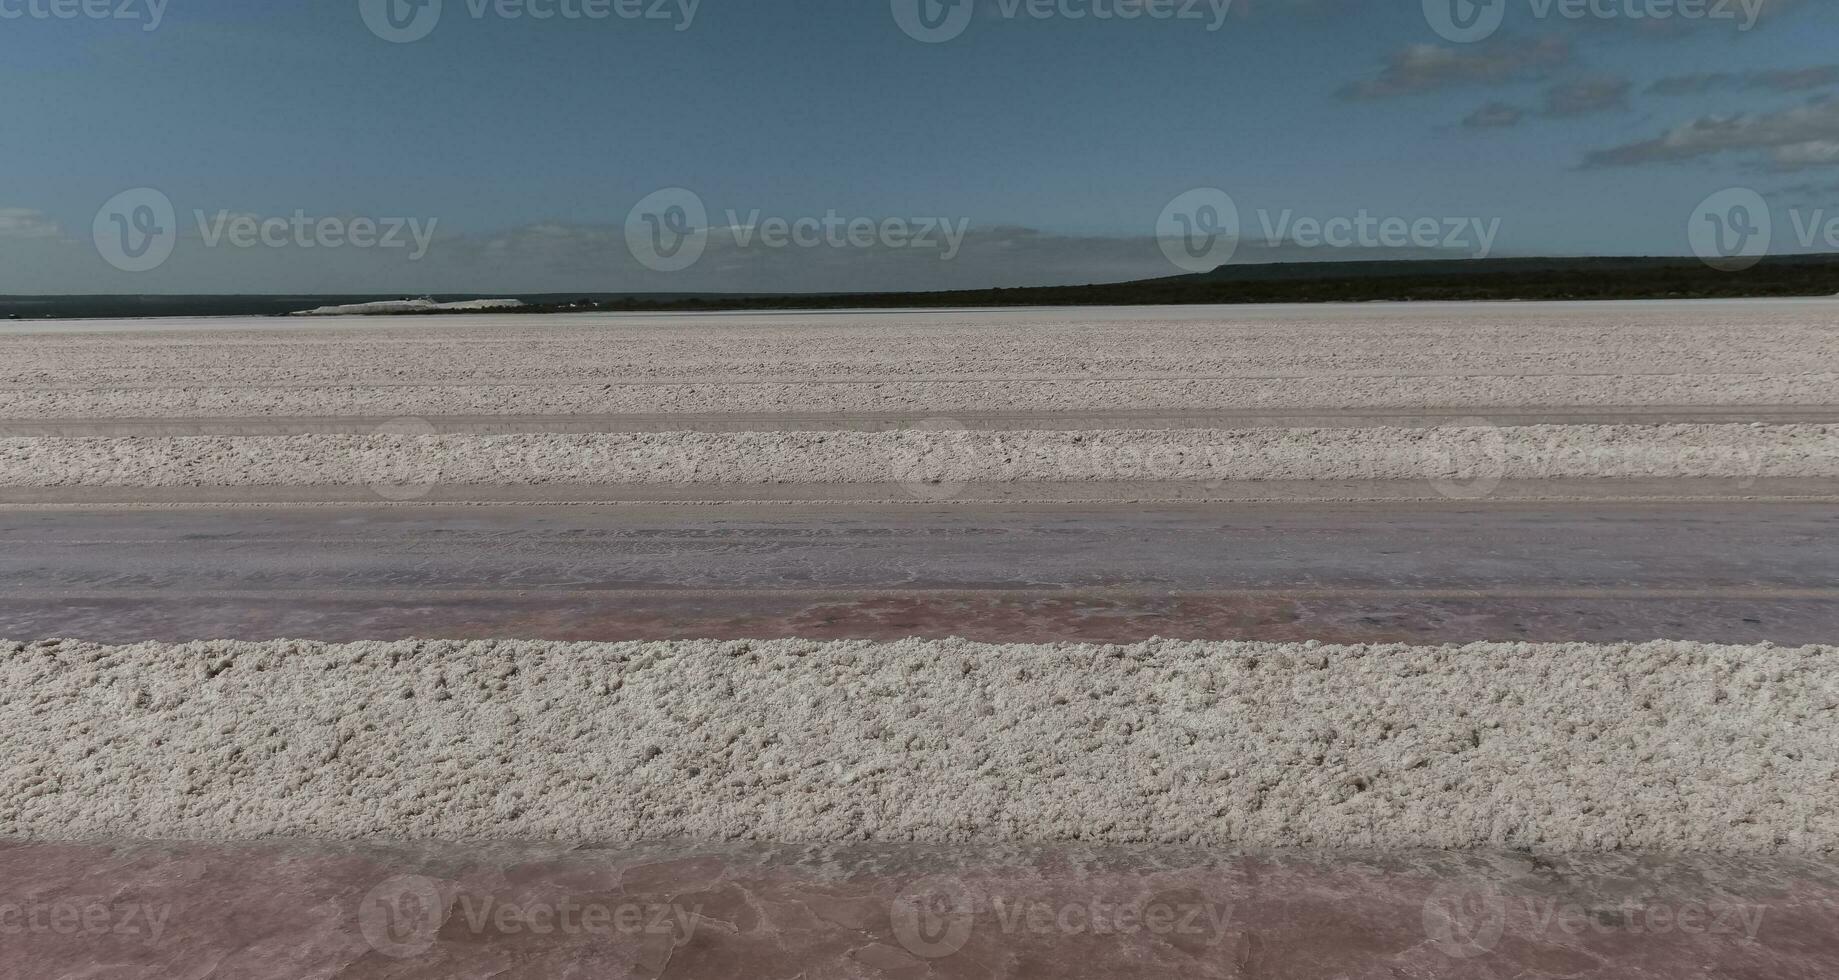 zout lagune bereid naar extract rauw zout, mijnbouw industrie in Argentinië foto